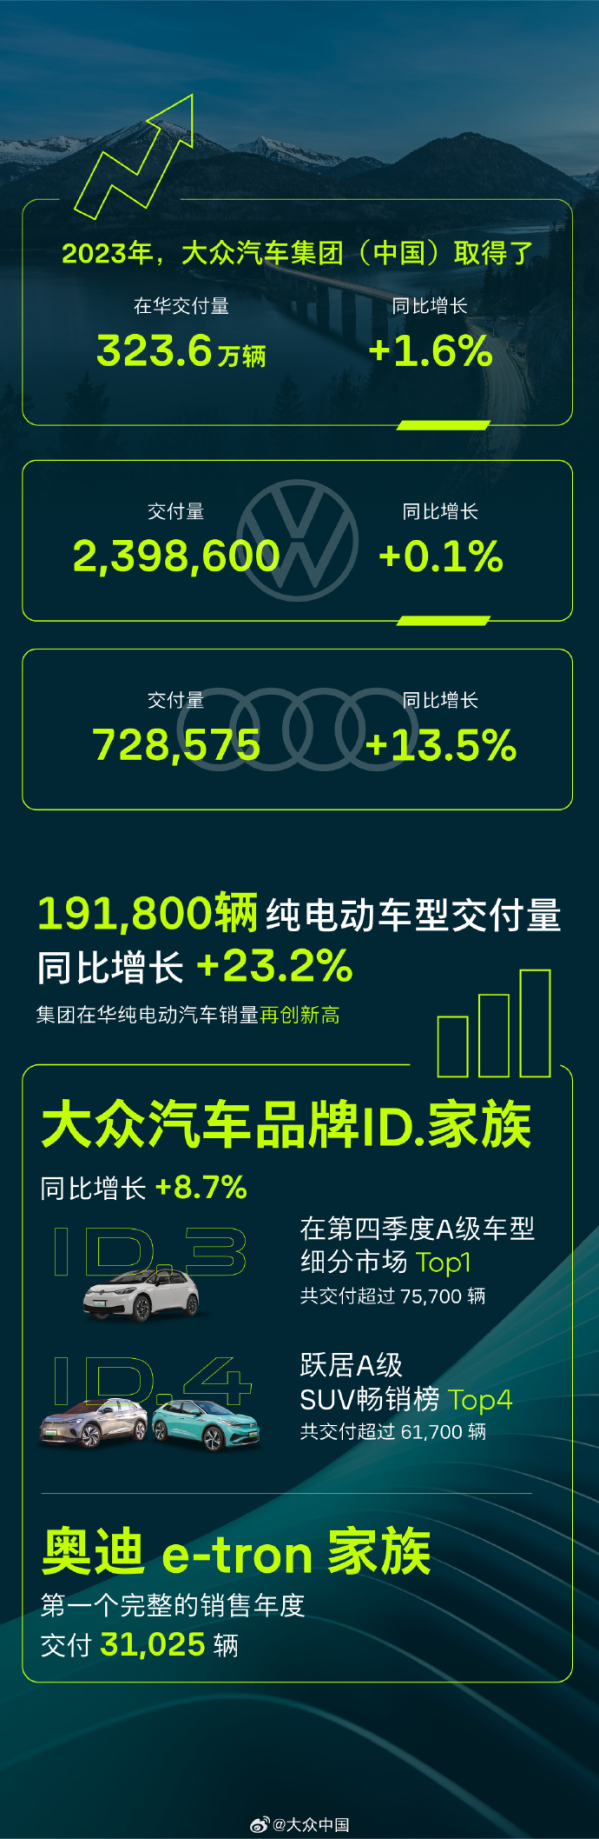 大众2023年在华交付323.6万辆 纯电车型增幅达23.2%